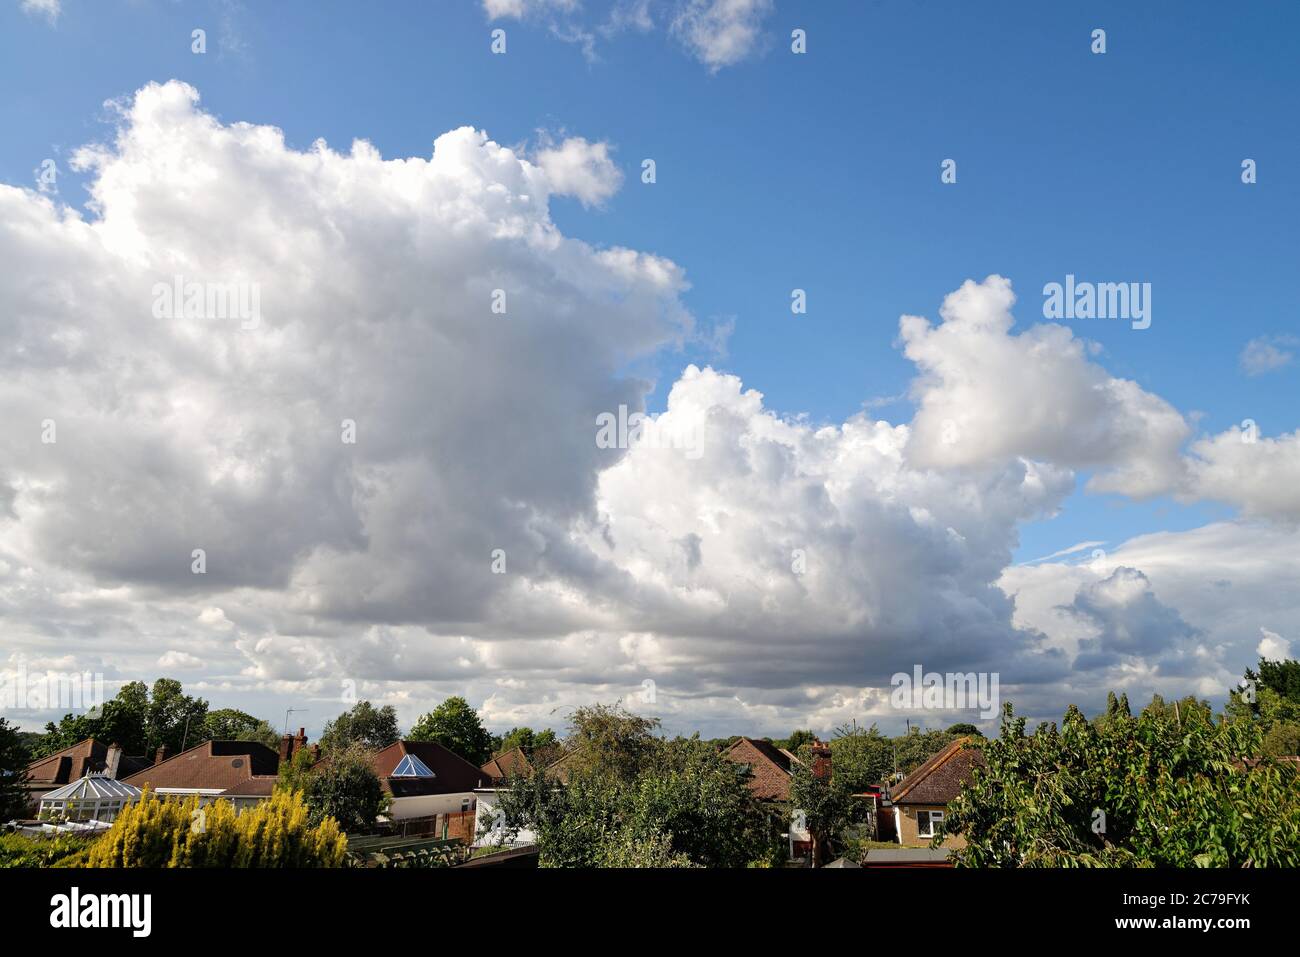 Dramatische Kumuluswolkenbildung über Dächern Stockfoto